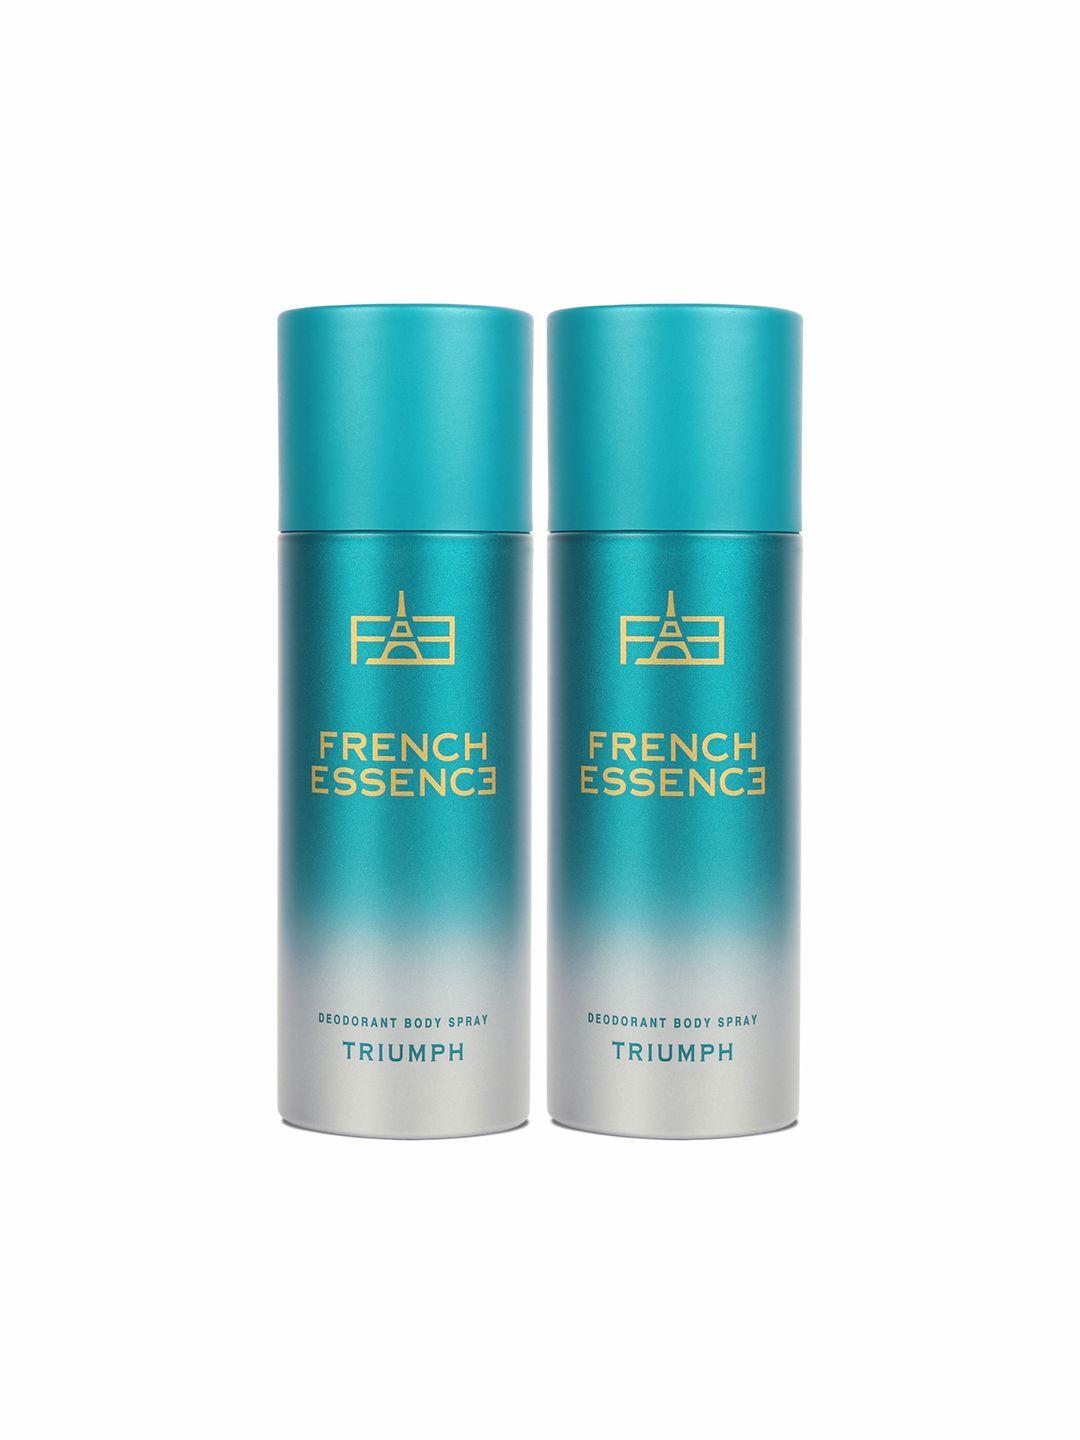 french essence set of 2 long lasting triumph deodorants body spray - 150ml each